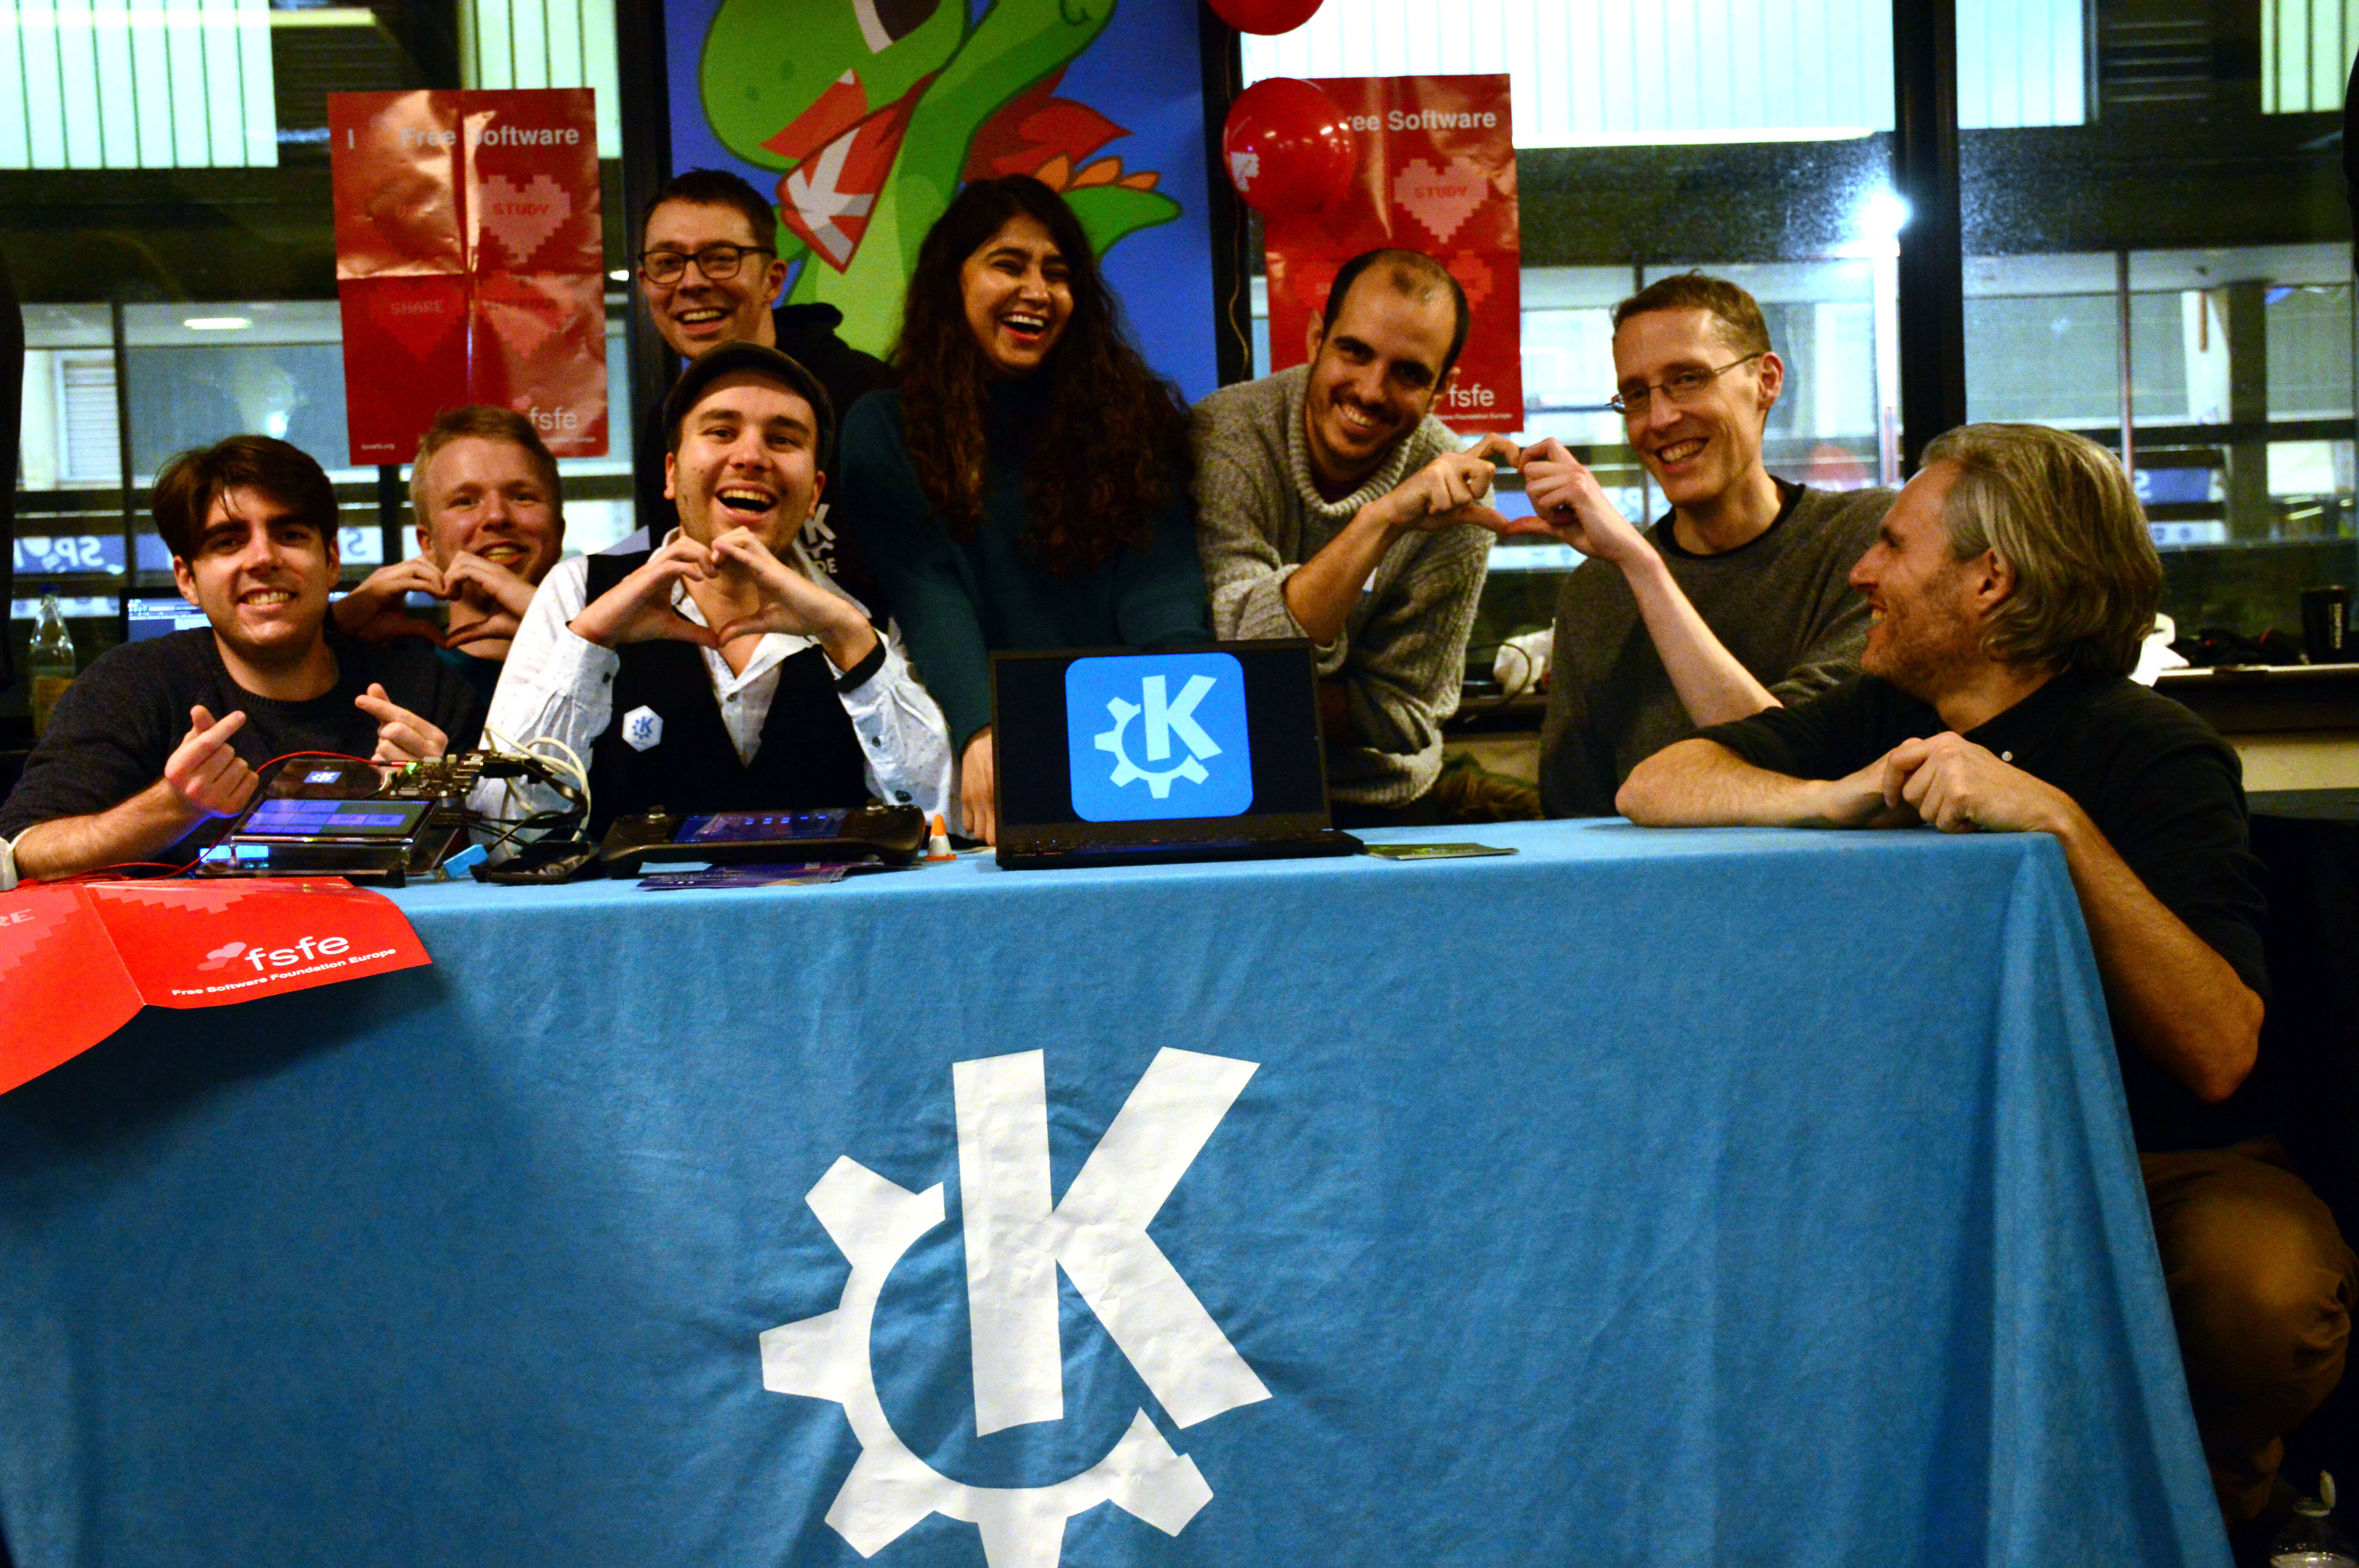 A equipa do KDE a demonstrar o seu ❤ pelo Software Livre